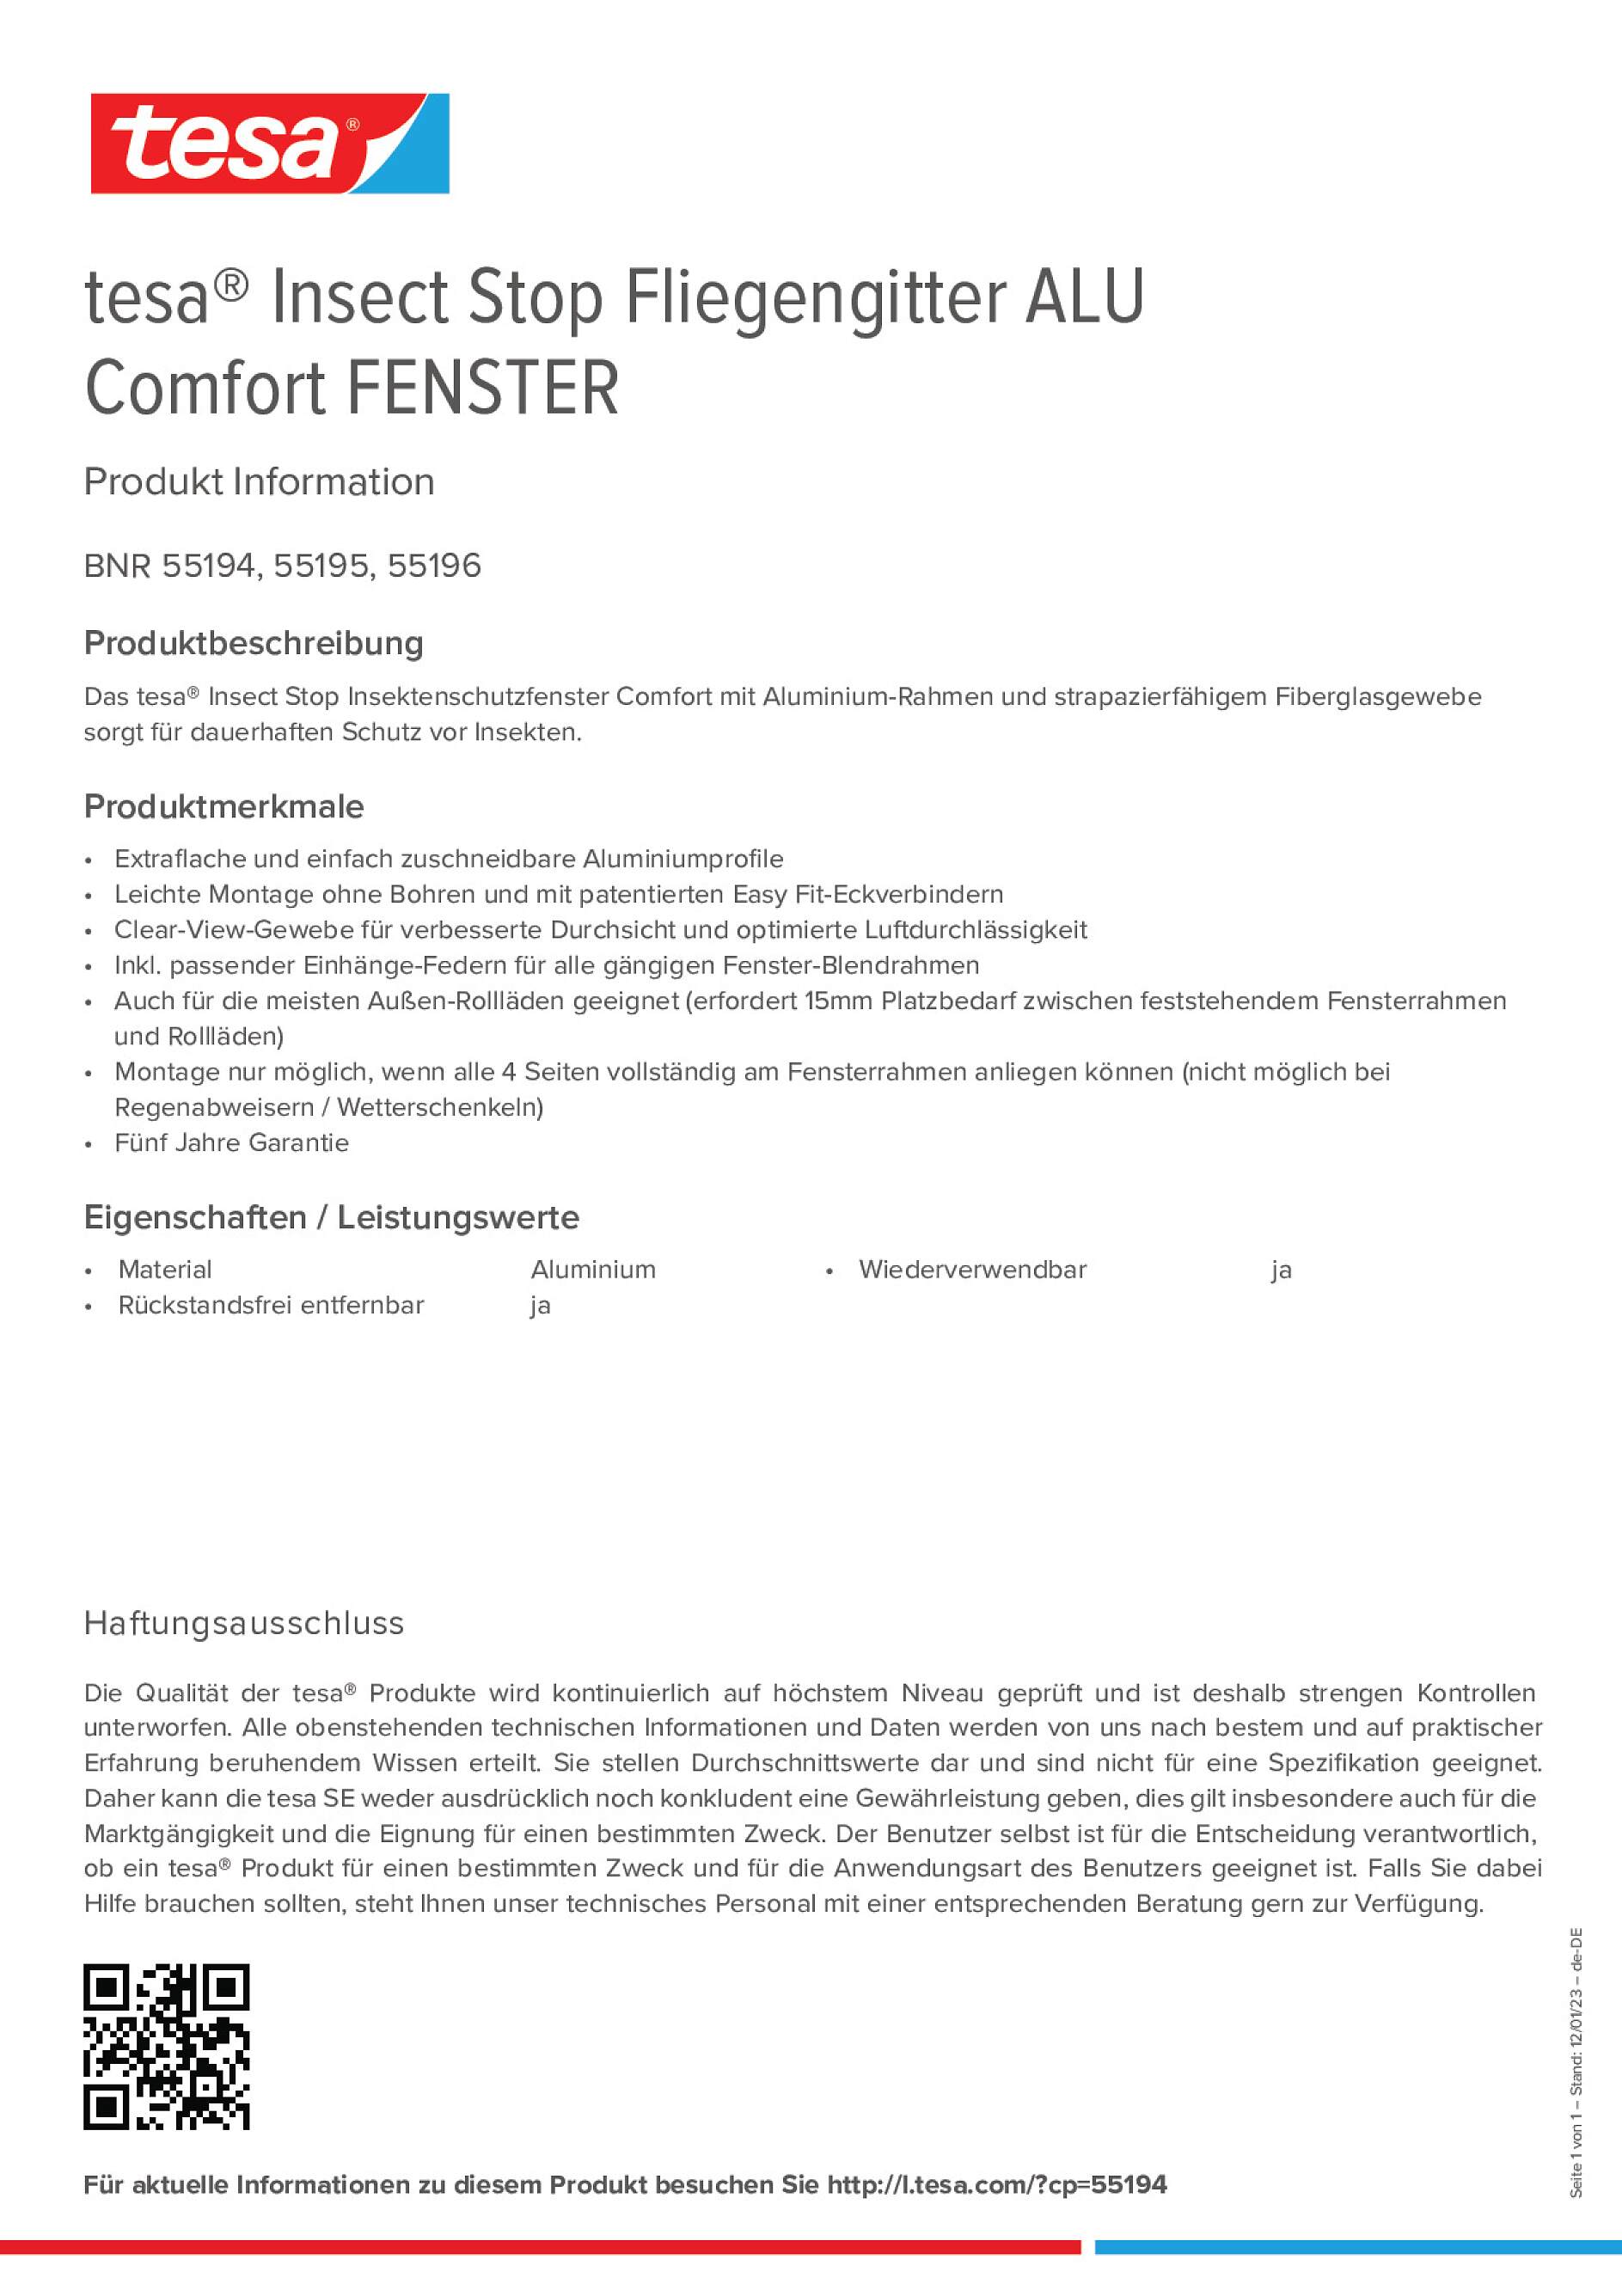 tesa® Insect Stop Fliegengitter ALU Comfort FENSTER - tesa